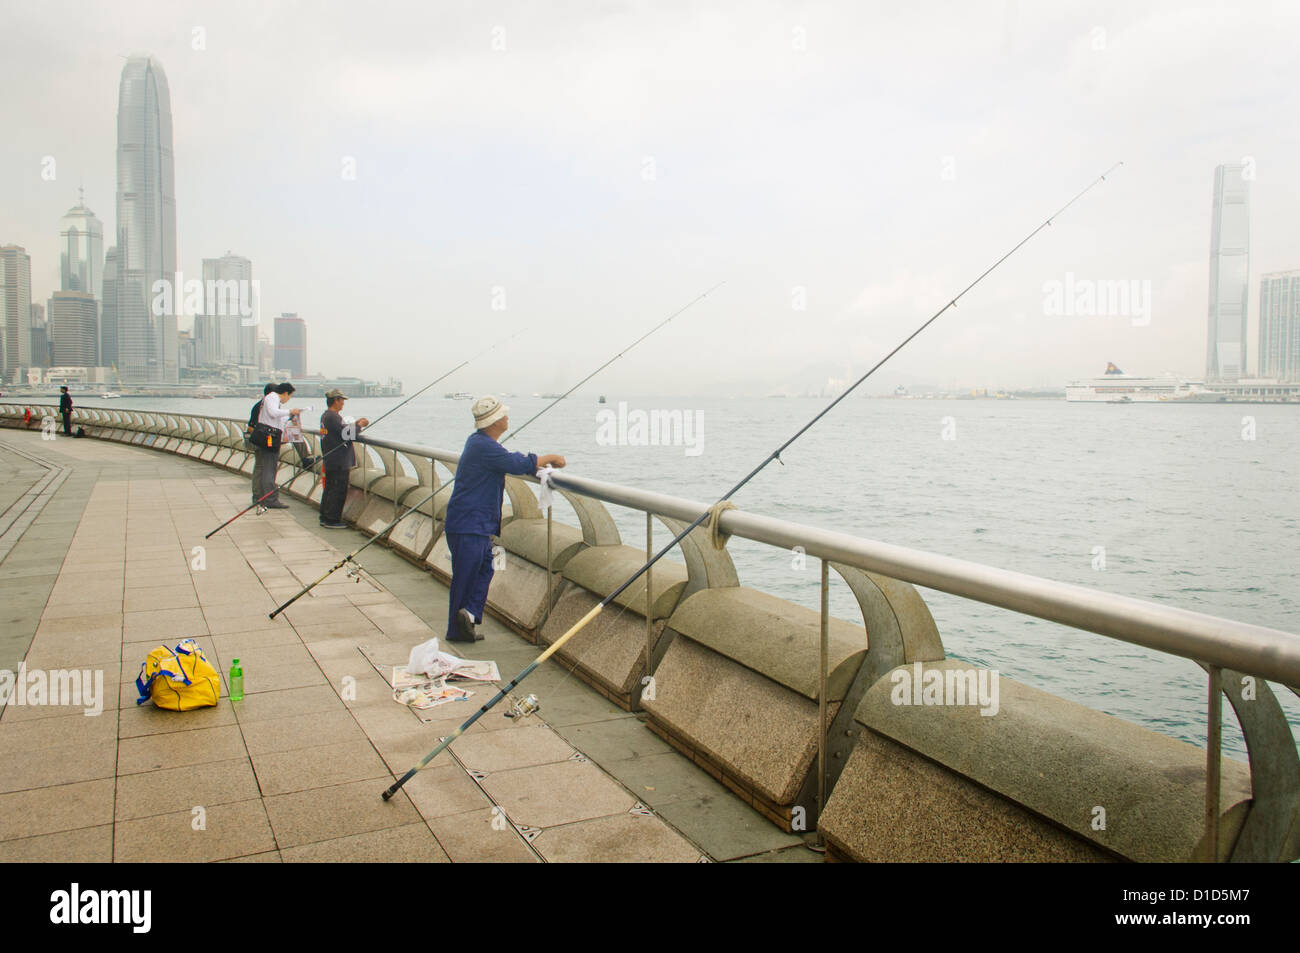 People are fishing at the Wan Chai or Wanchai Waterfront Promenade of Hong Kong, China. Stock Photo